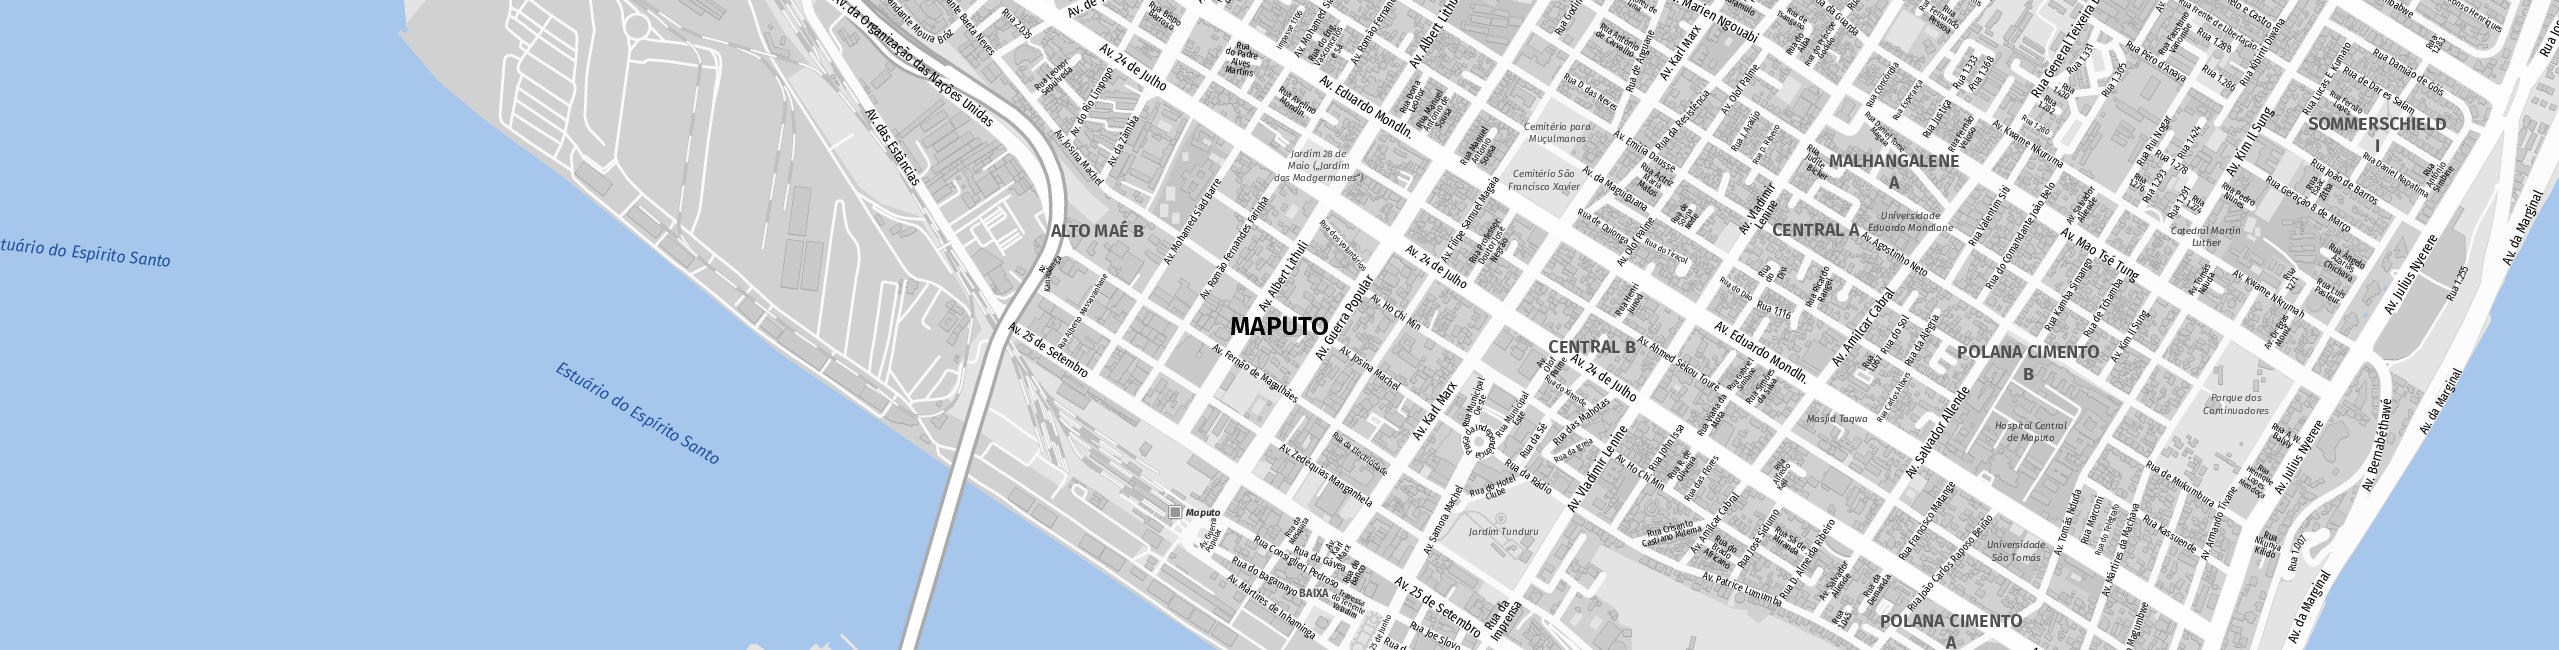 Stadtplan Maputo zum Downloaden.